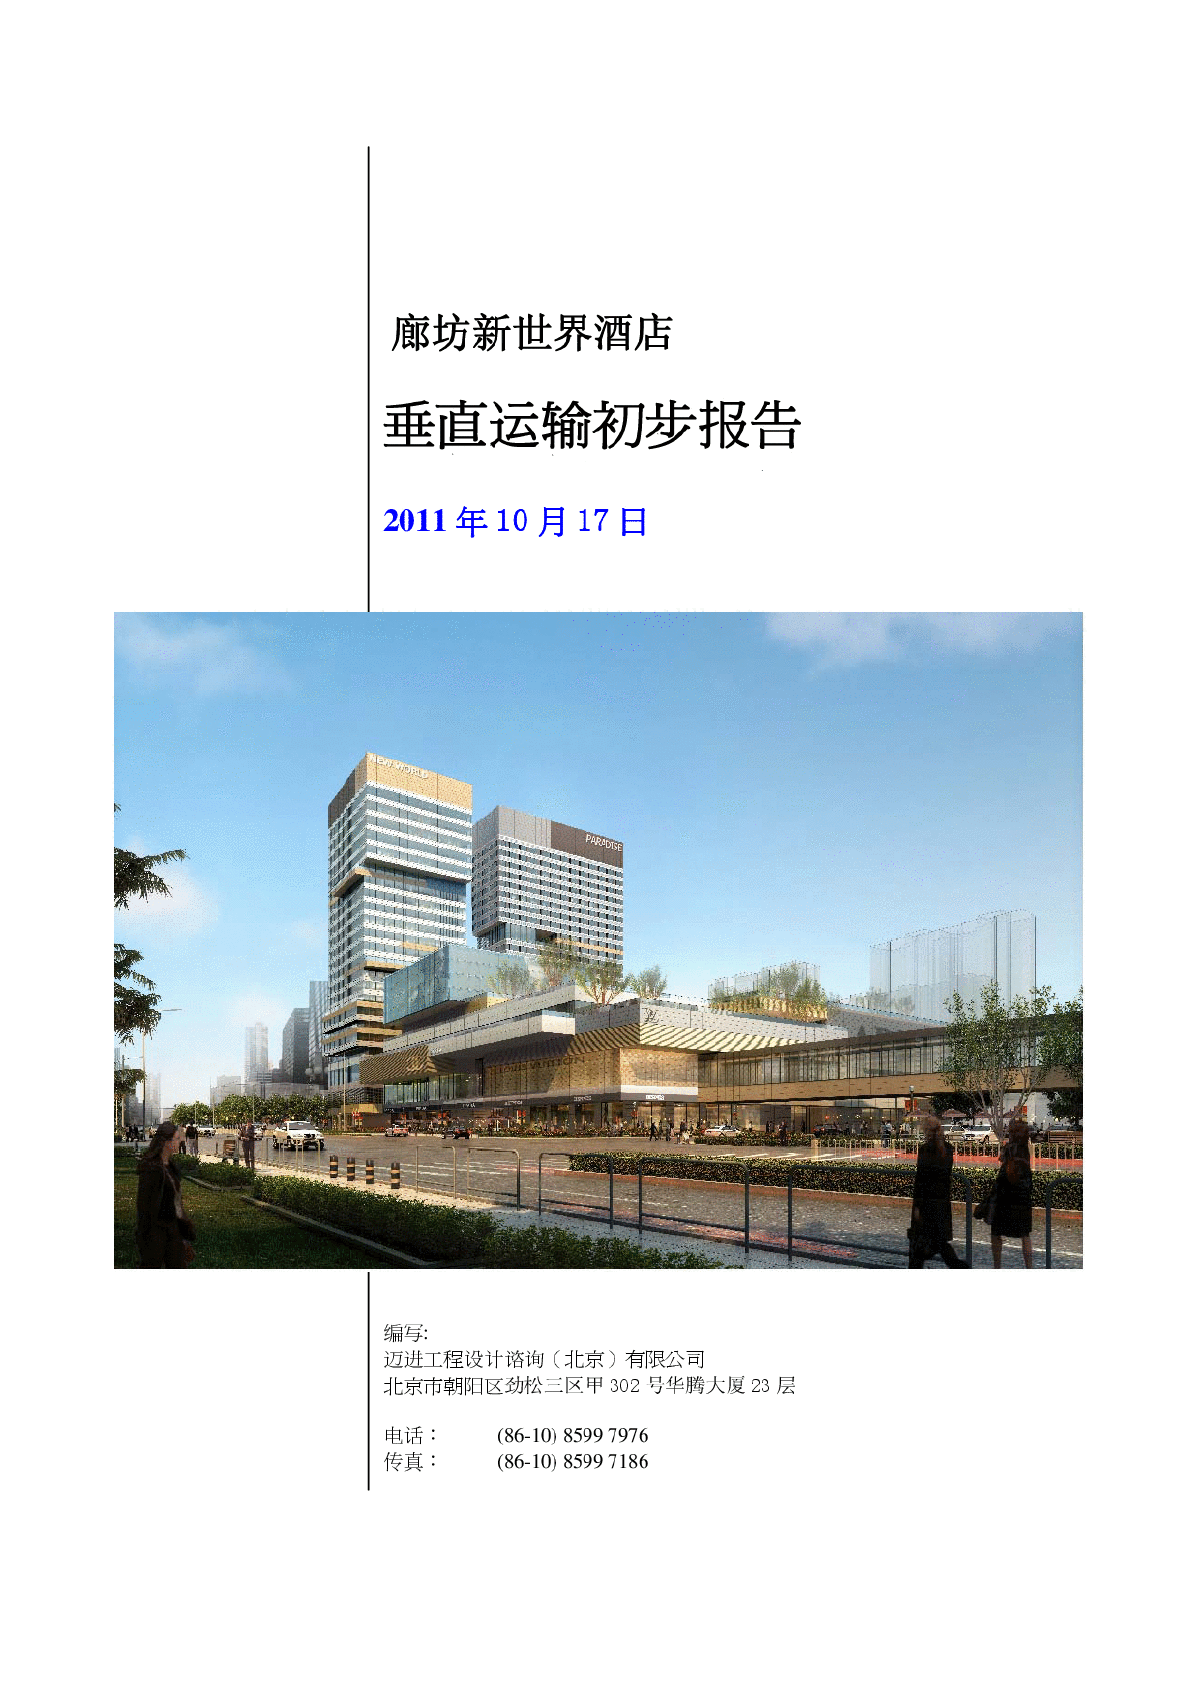 廊坊新世界酒店垂直运输交通报告